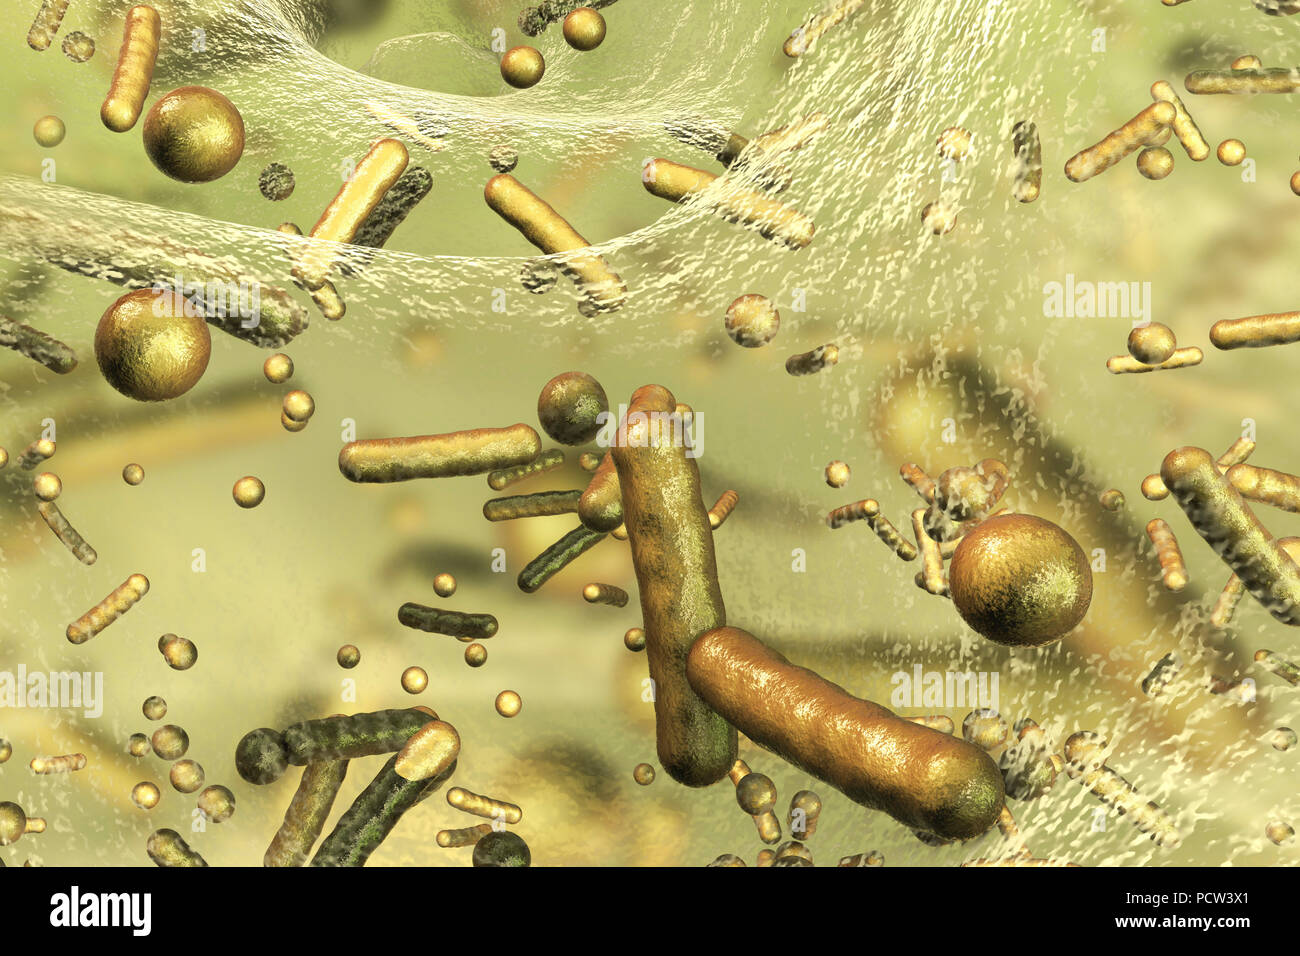 Sferica e a forma di asta batteri all'interno del biofilm, illustrazione del computer. Un biofilm è una colonia di batteri che si forma un rivestimento su una superficie. Luoghi comuni per biofilm da sviluppare sono in bocca, dove possono causare delle cavità del dente e malattie gengivali, su lenti a contatto, dove possono causare infezioni di occhio, sulle rocce sommerso in acqua e sulle attrezzature industriali, dove essi possono provocare incrostazioni. Foto Stock